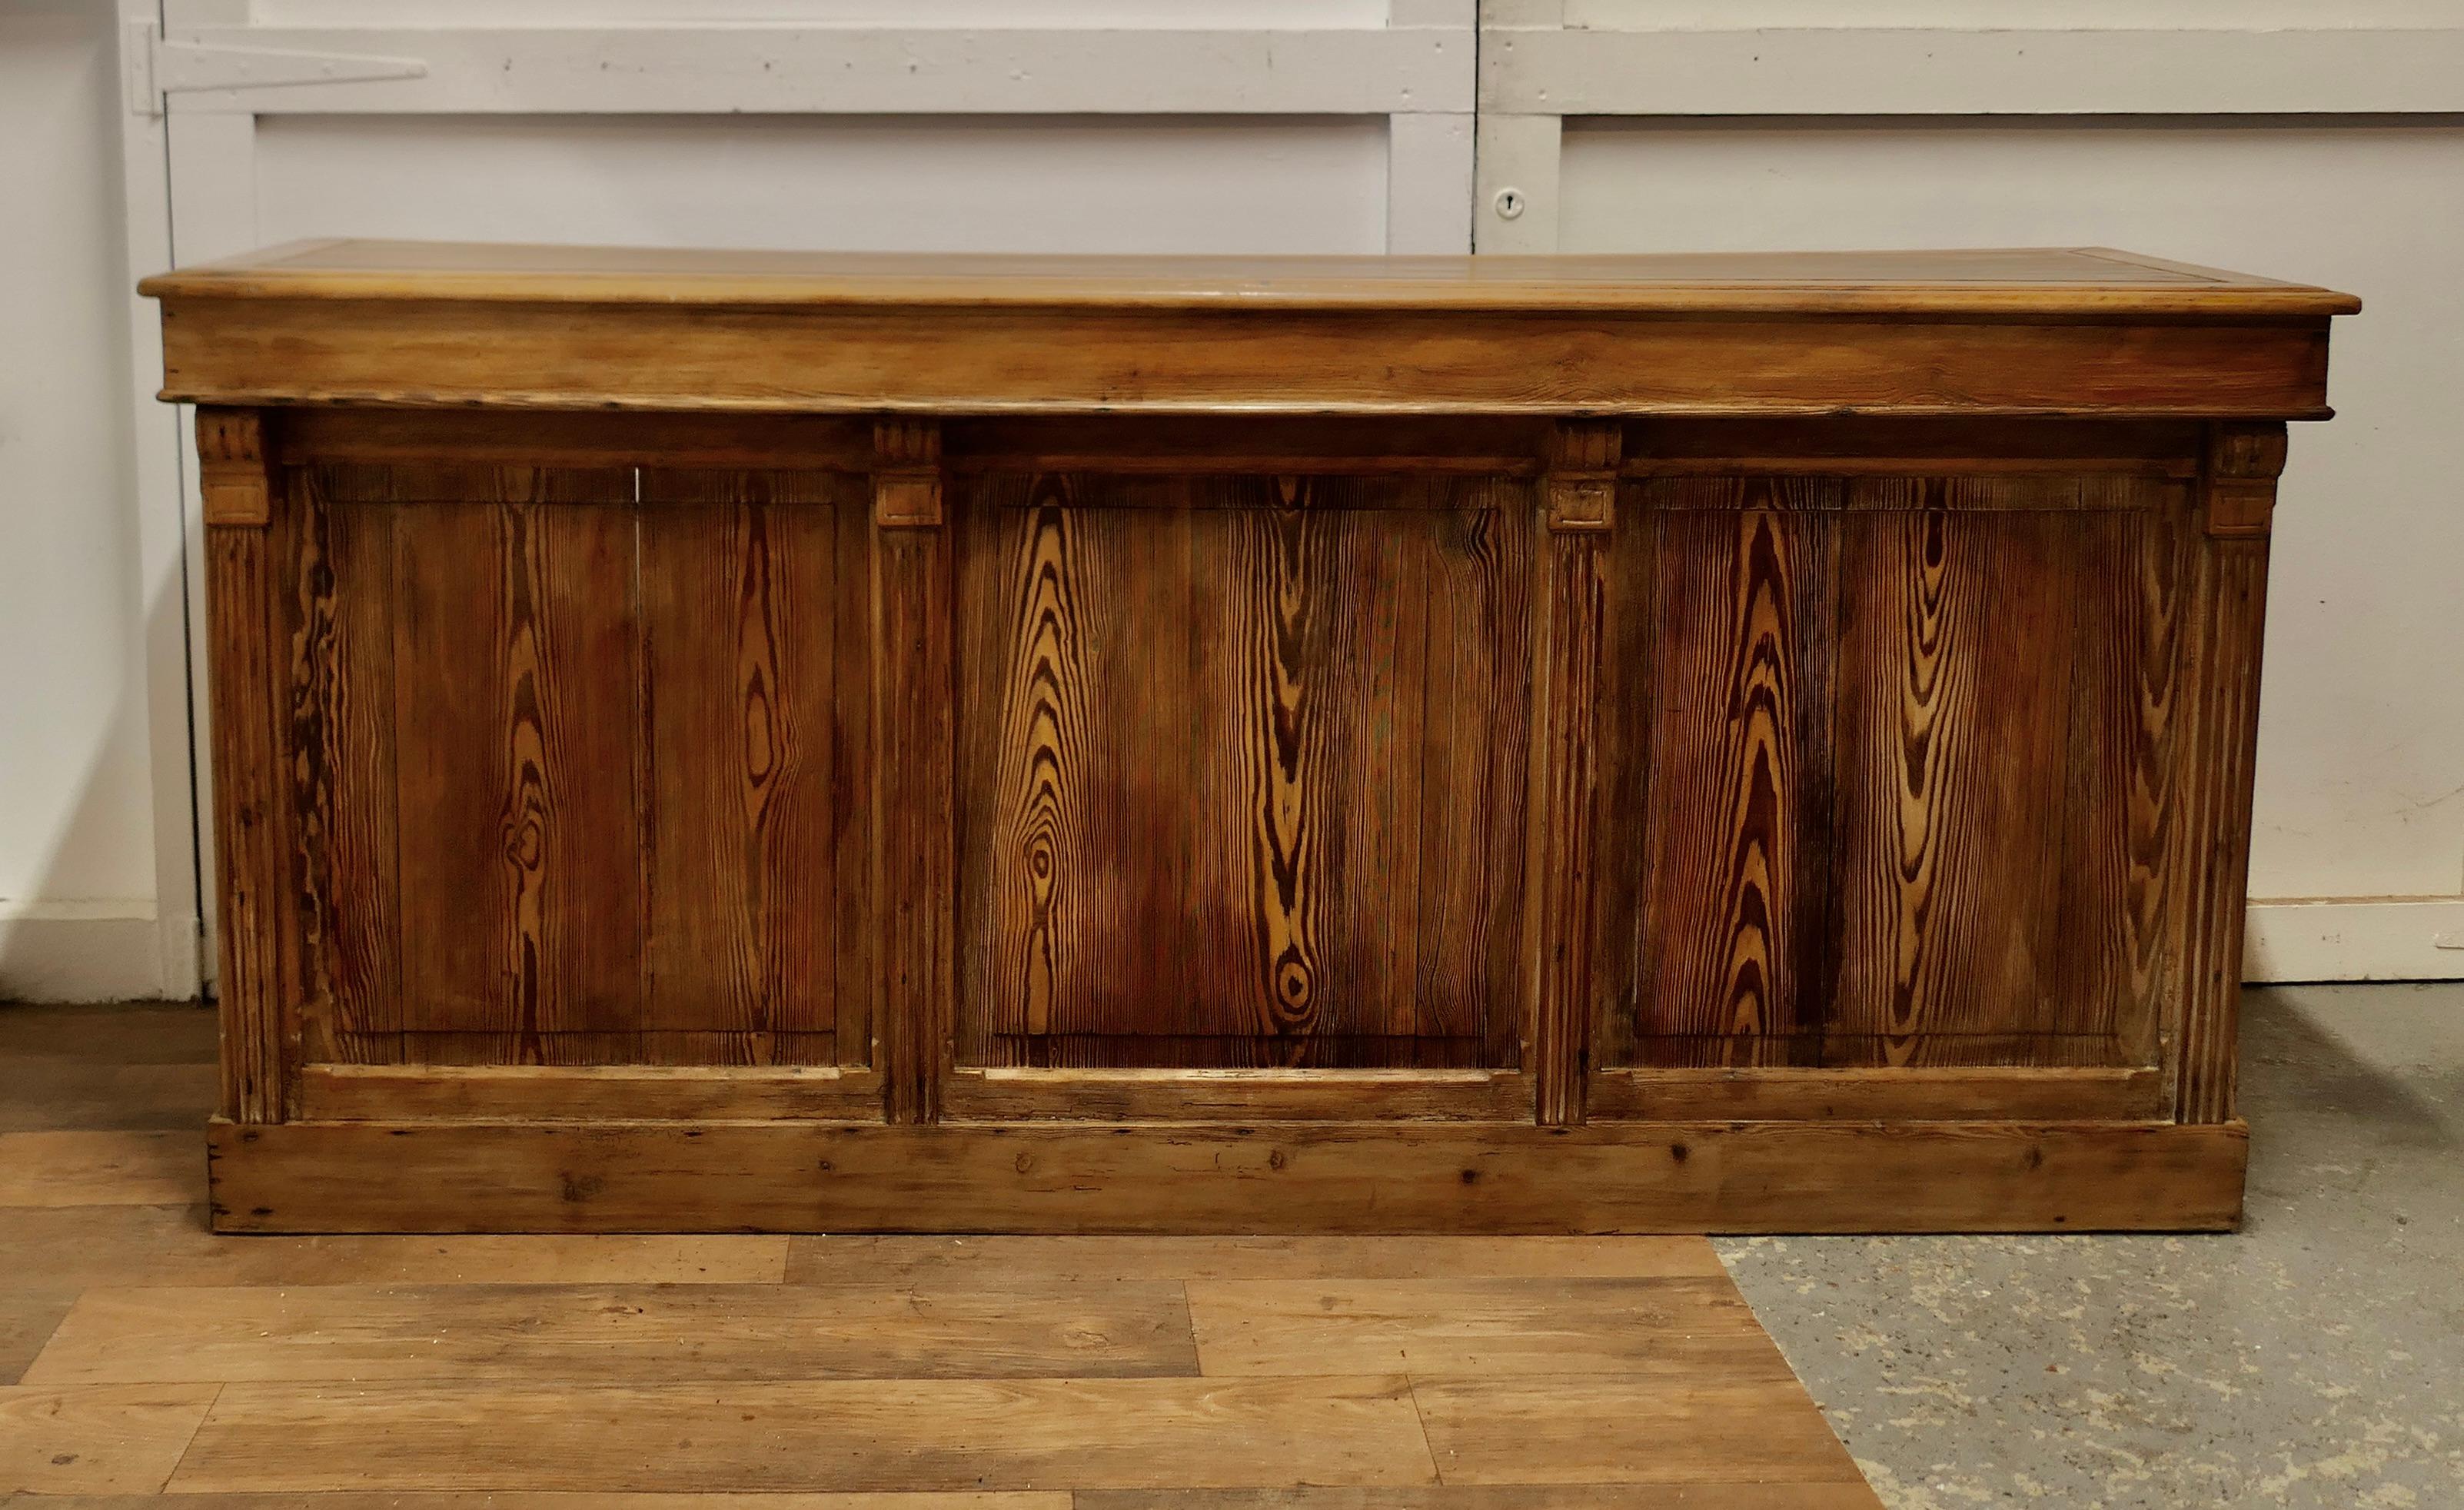 Große rustikale Kücheninsel aus Pitch Pine, Dry Bar

Diese schöne alte Theke hat eine 1